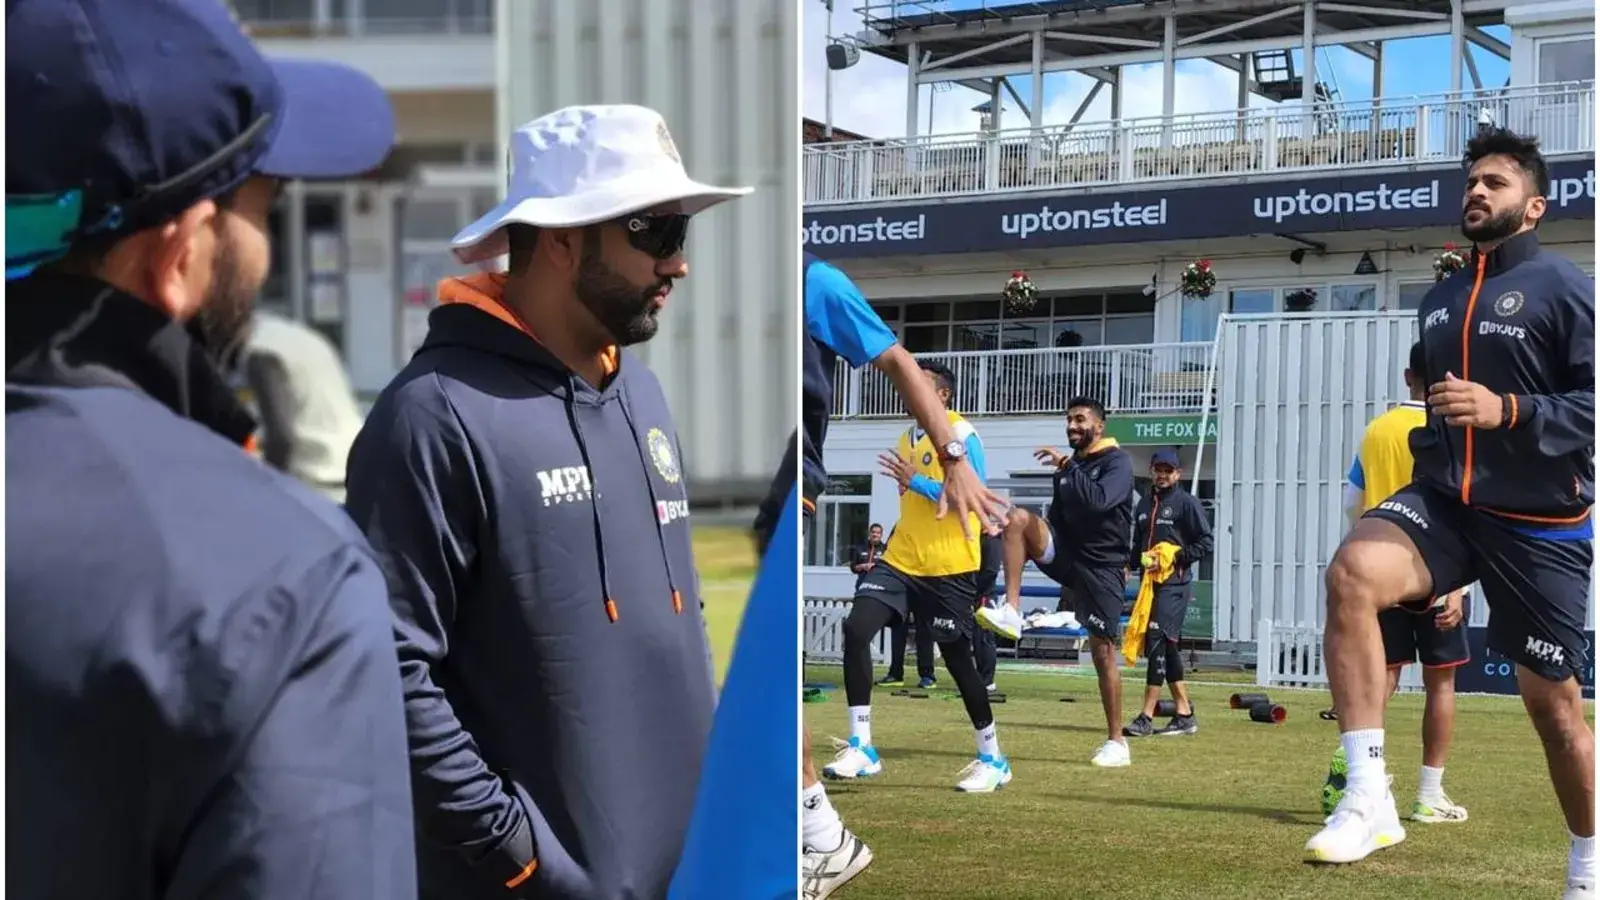  रोहित शर्मा और भारतीय टेस्ट टीम ने इंग्लैंड मैच के लिए प्रशिक्षण शुरू किया |  क्रिकेट
